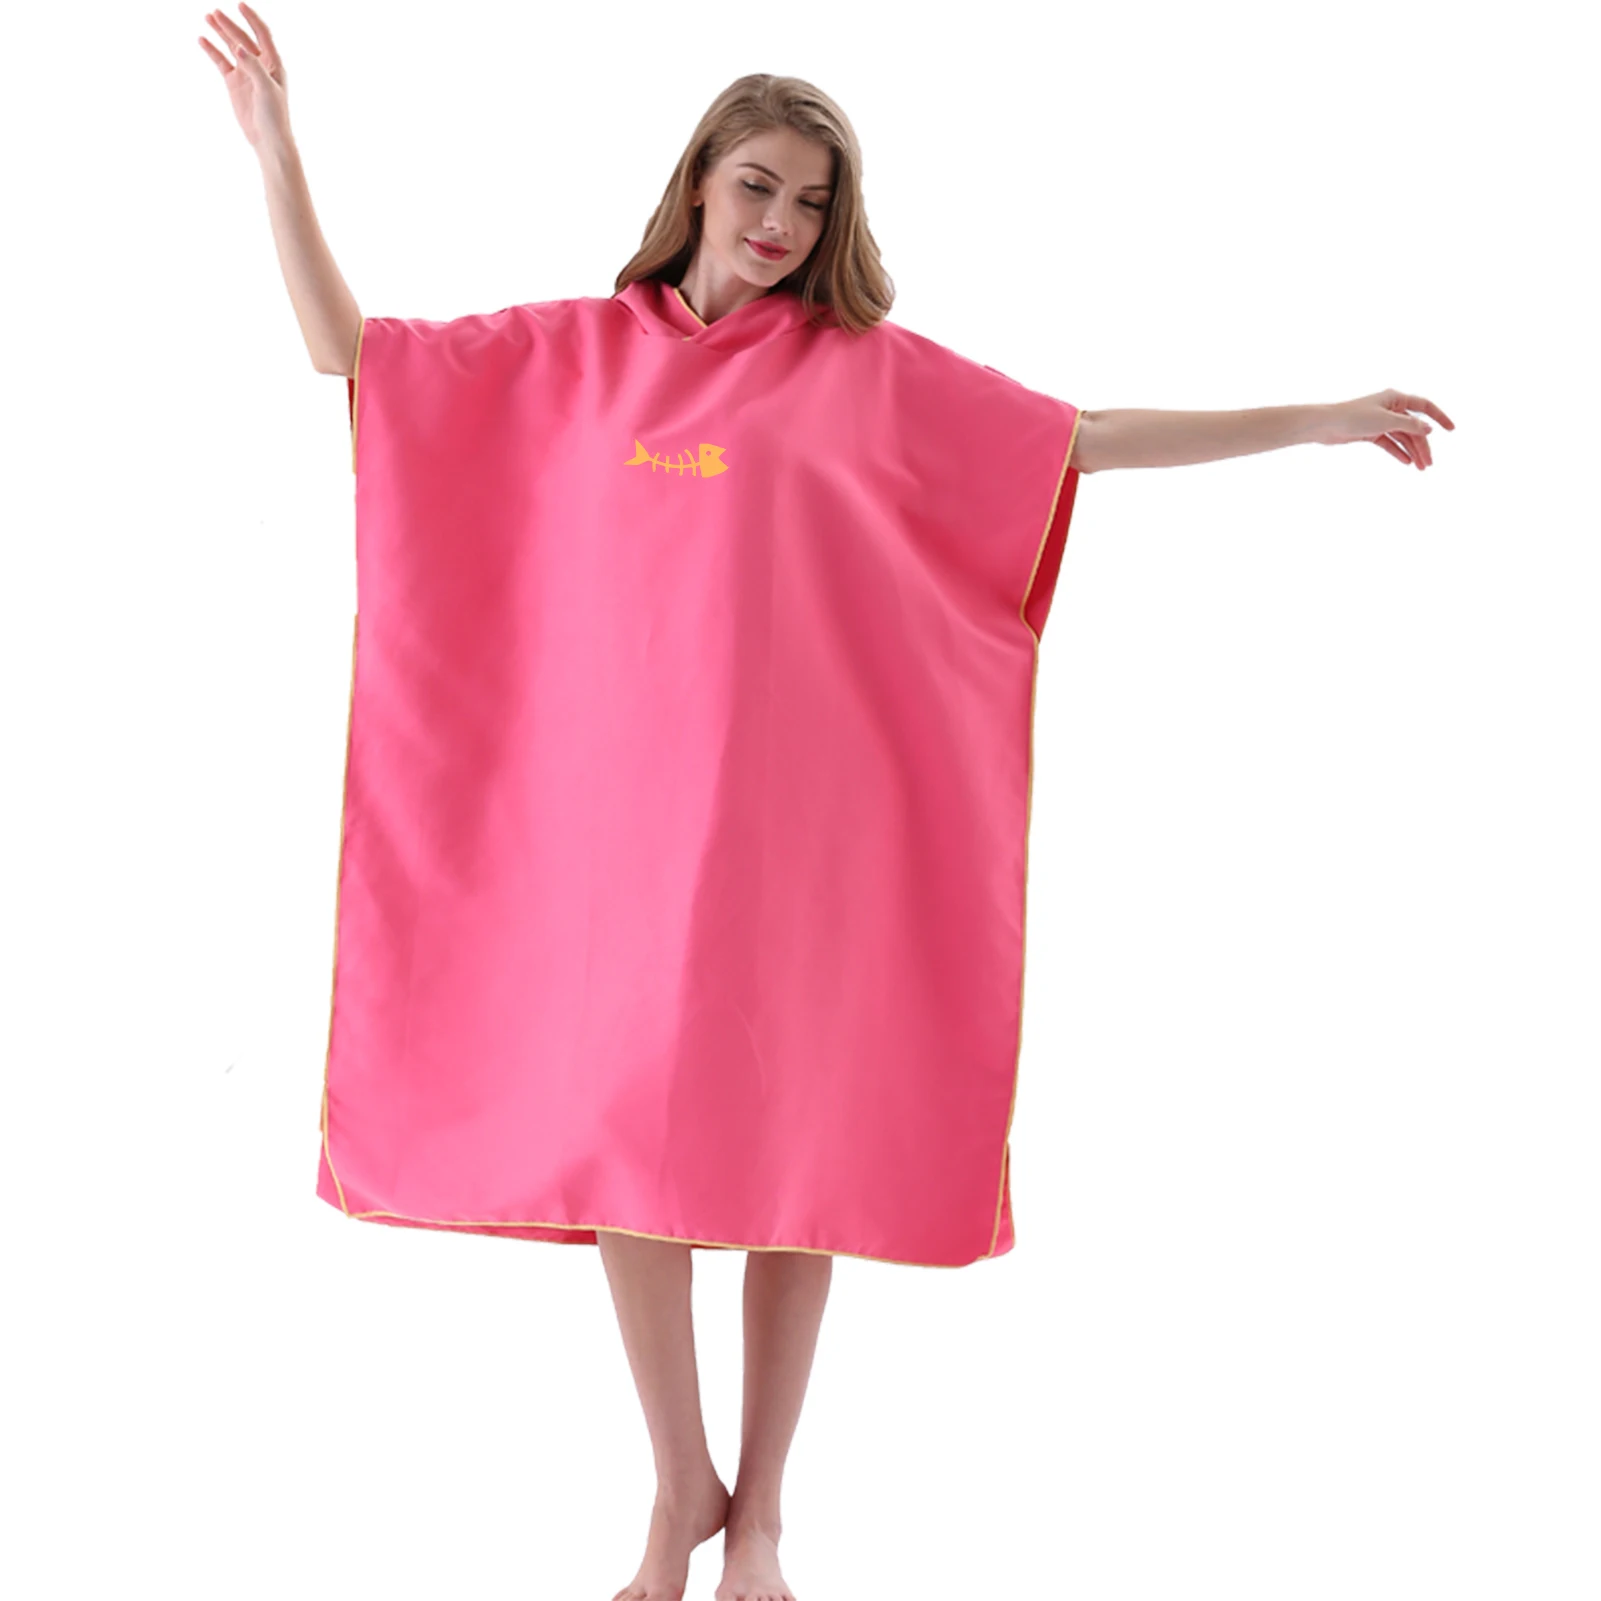 Быстросохнущее полотенце с капюшоном водолазный костюм для взрослых халат Пончо, пляжное одеяло из микрофибры, банное полотенце, впитывающее воду для серфинга, купальное полотенце Изображение 3